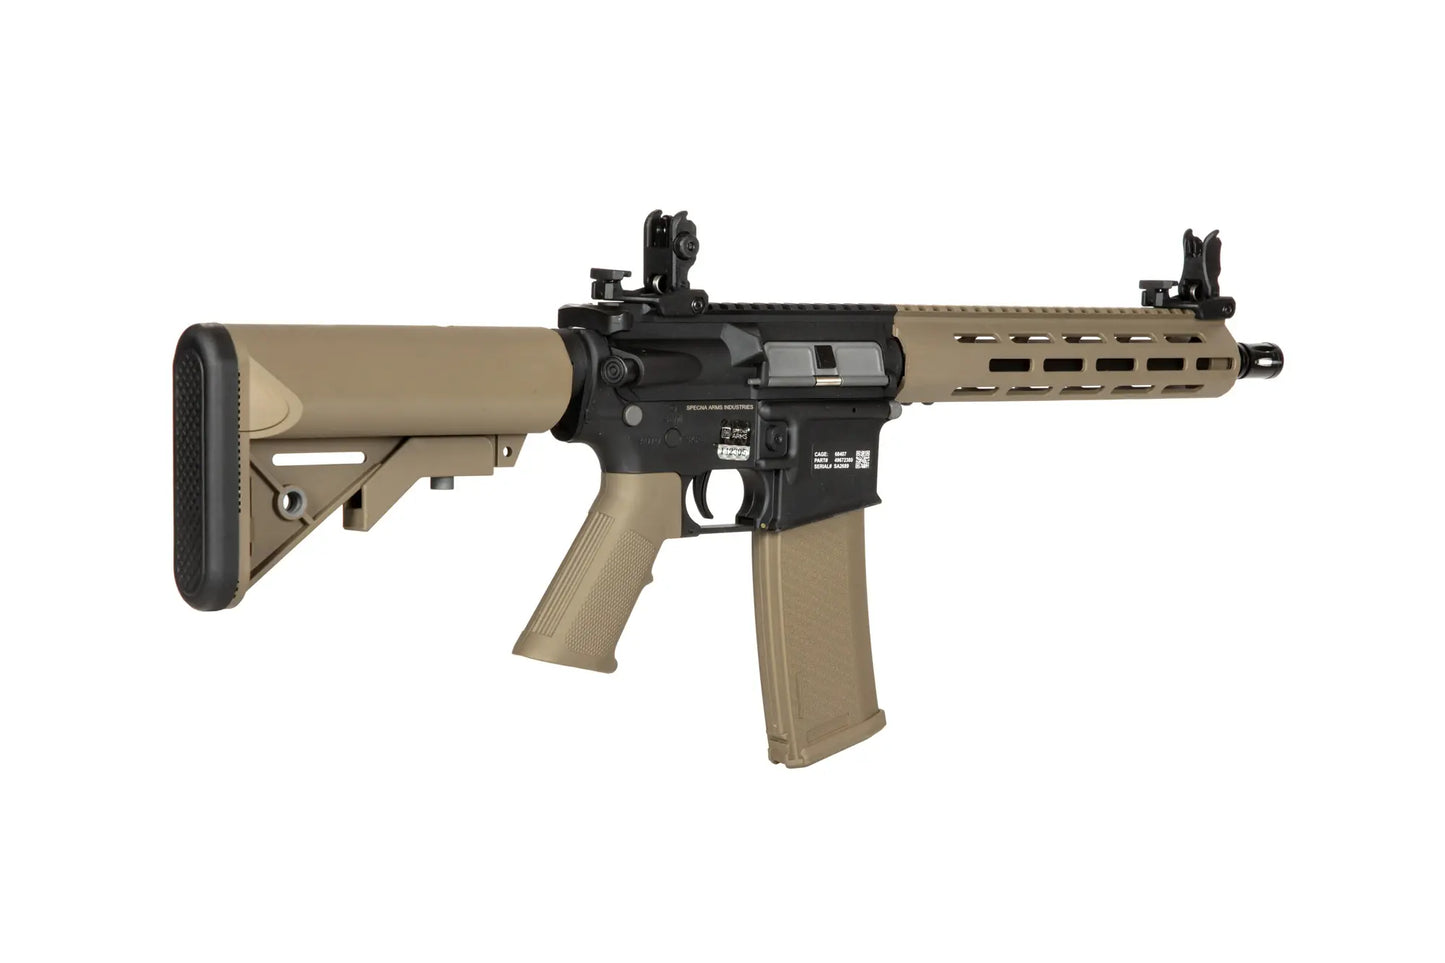 Specna Arms FLEX SA-F03 Half-Tan GATE X-ASR